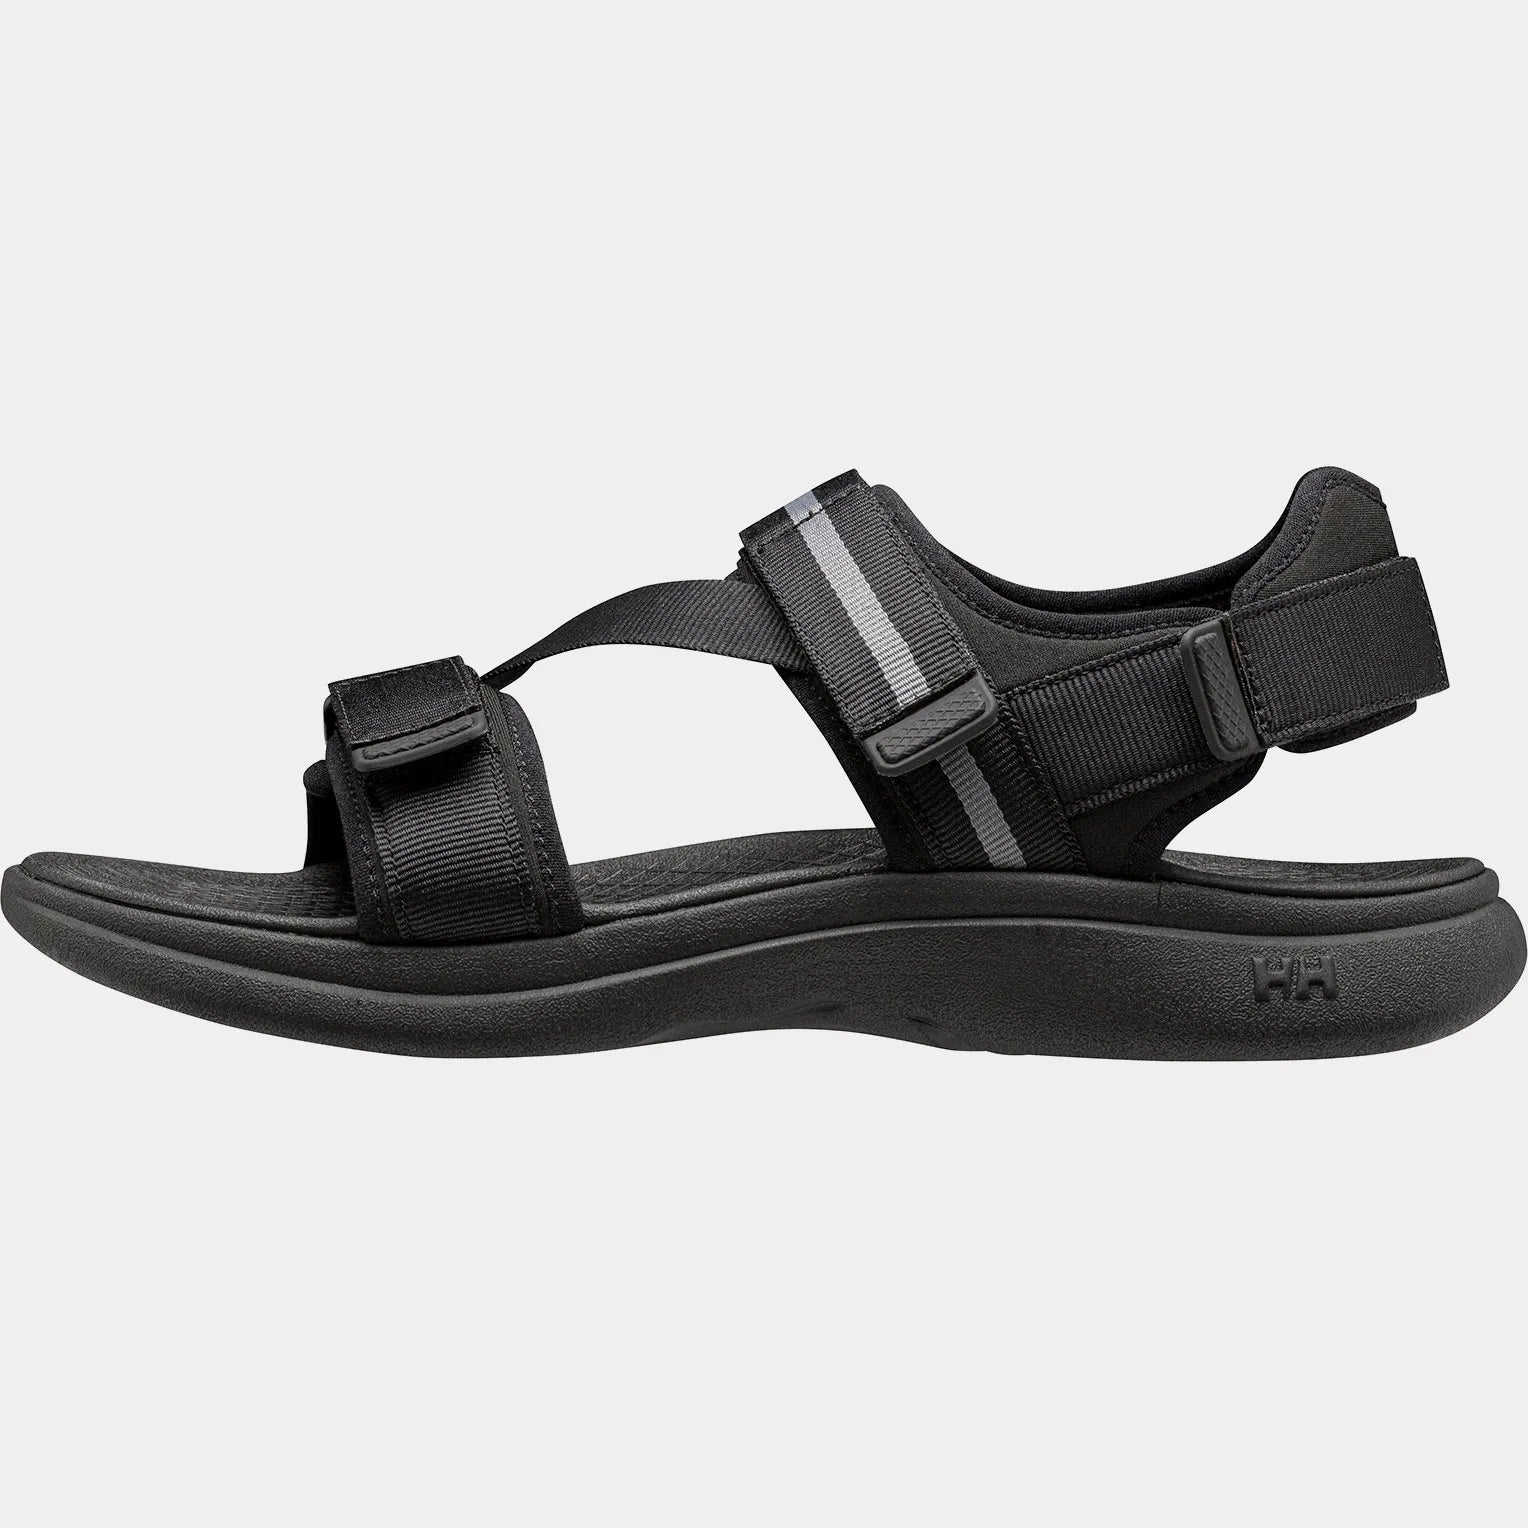 Men's Sandefjord Sandals - Black